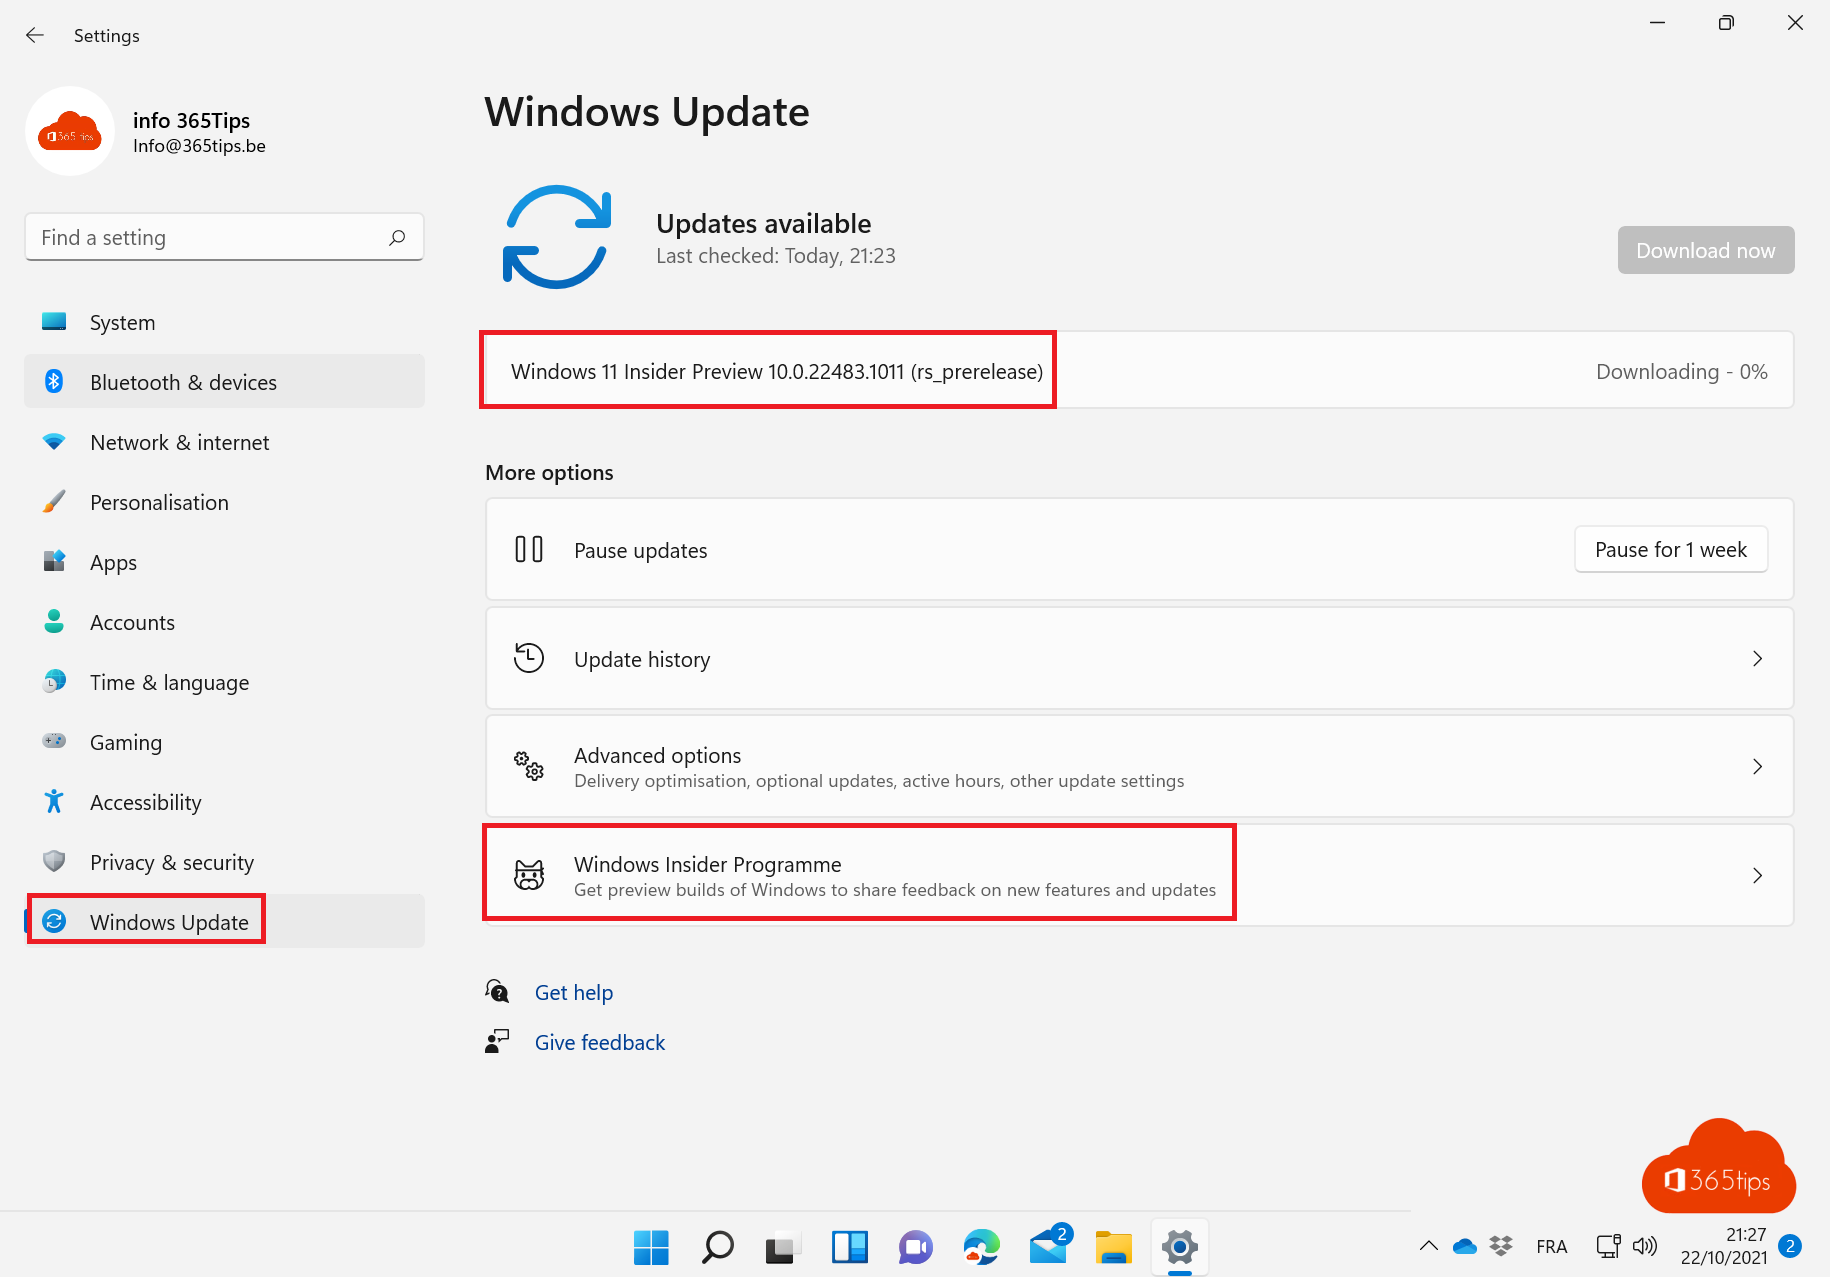 Cómo entrar en el programa Microsoft Windows Insider preview - Windows 11